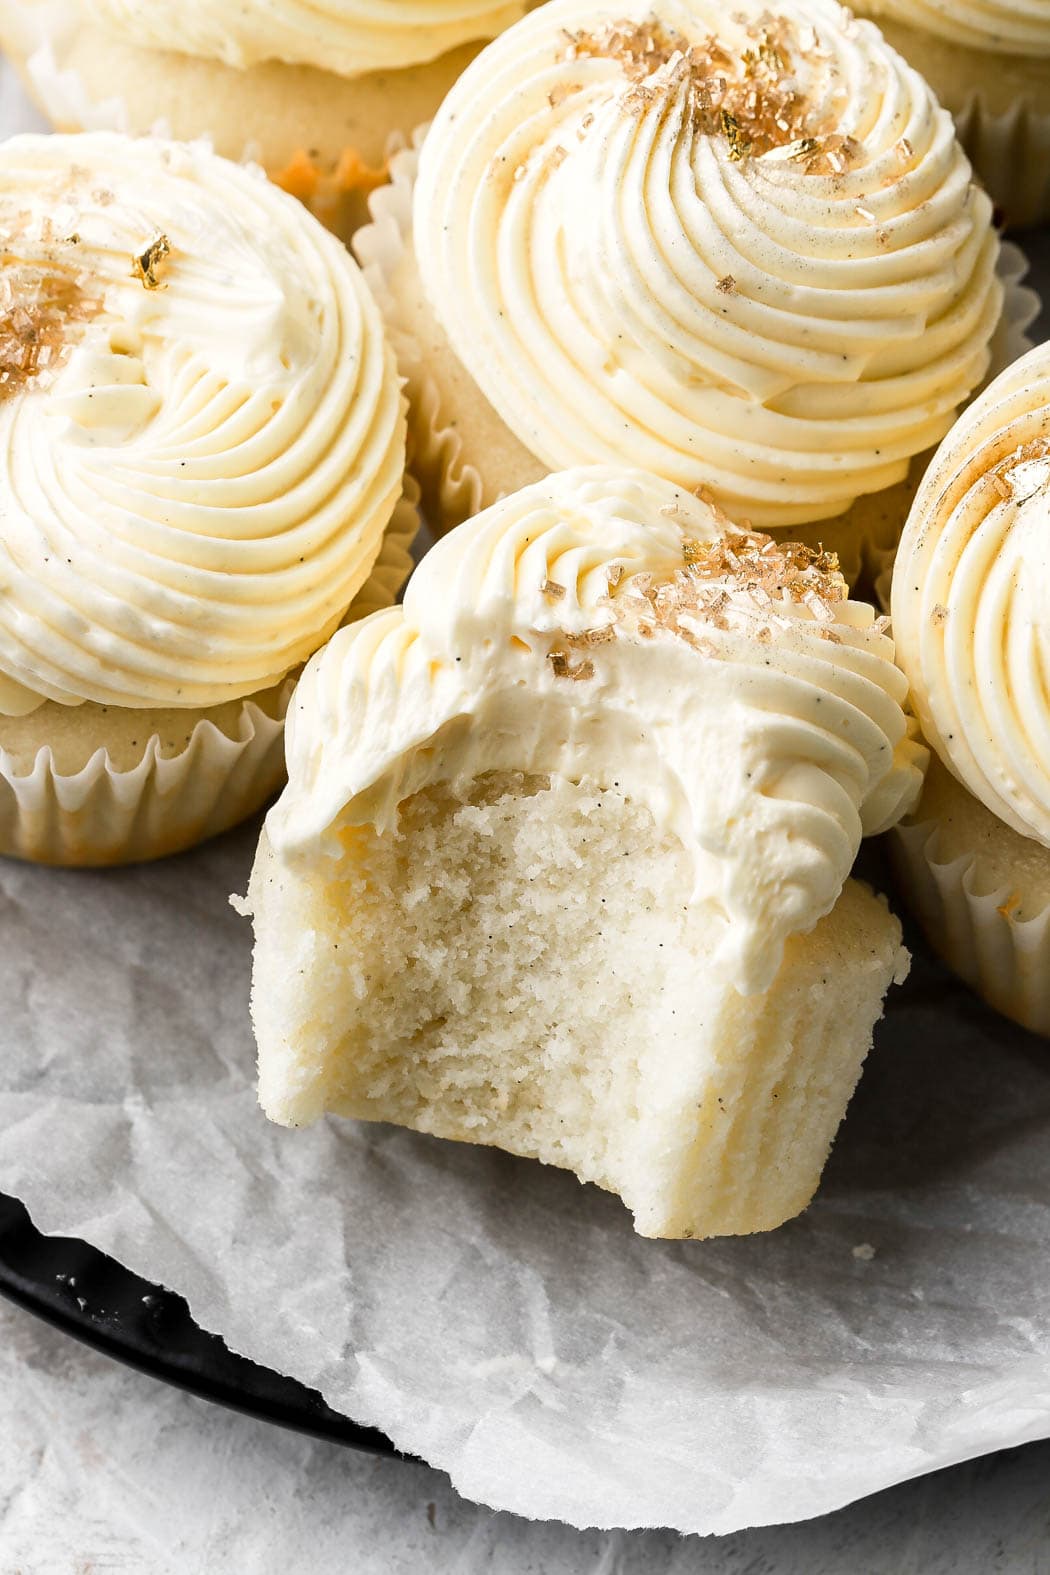 vanilla cupcakes with vanilla buttercream